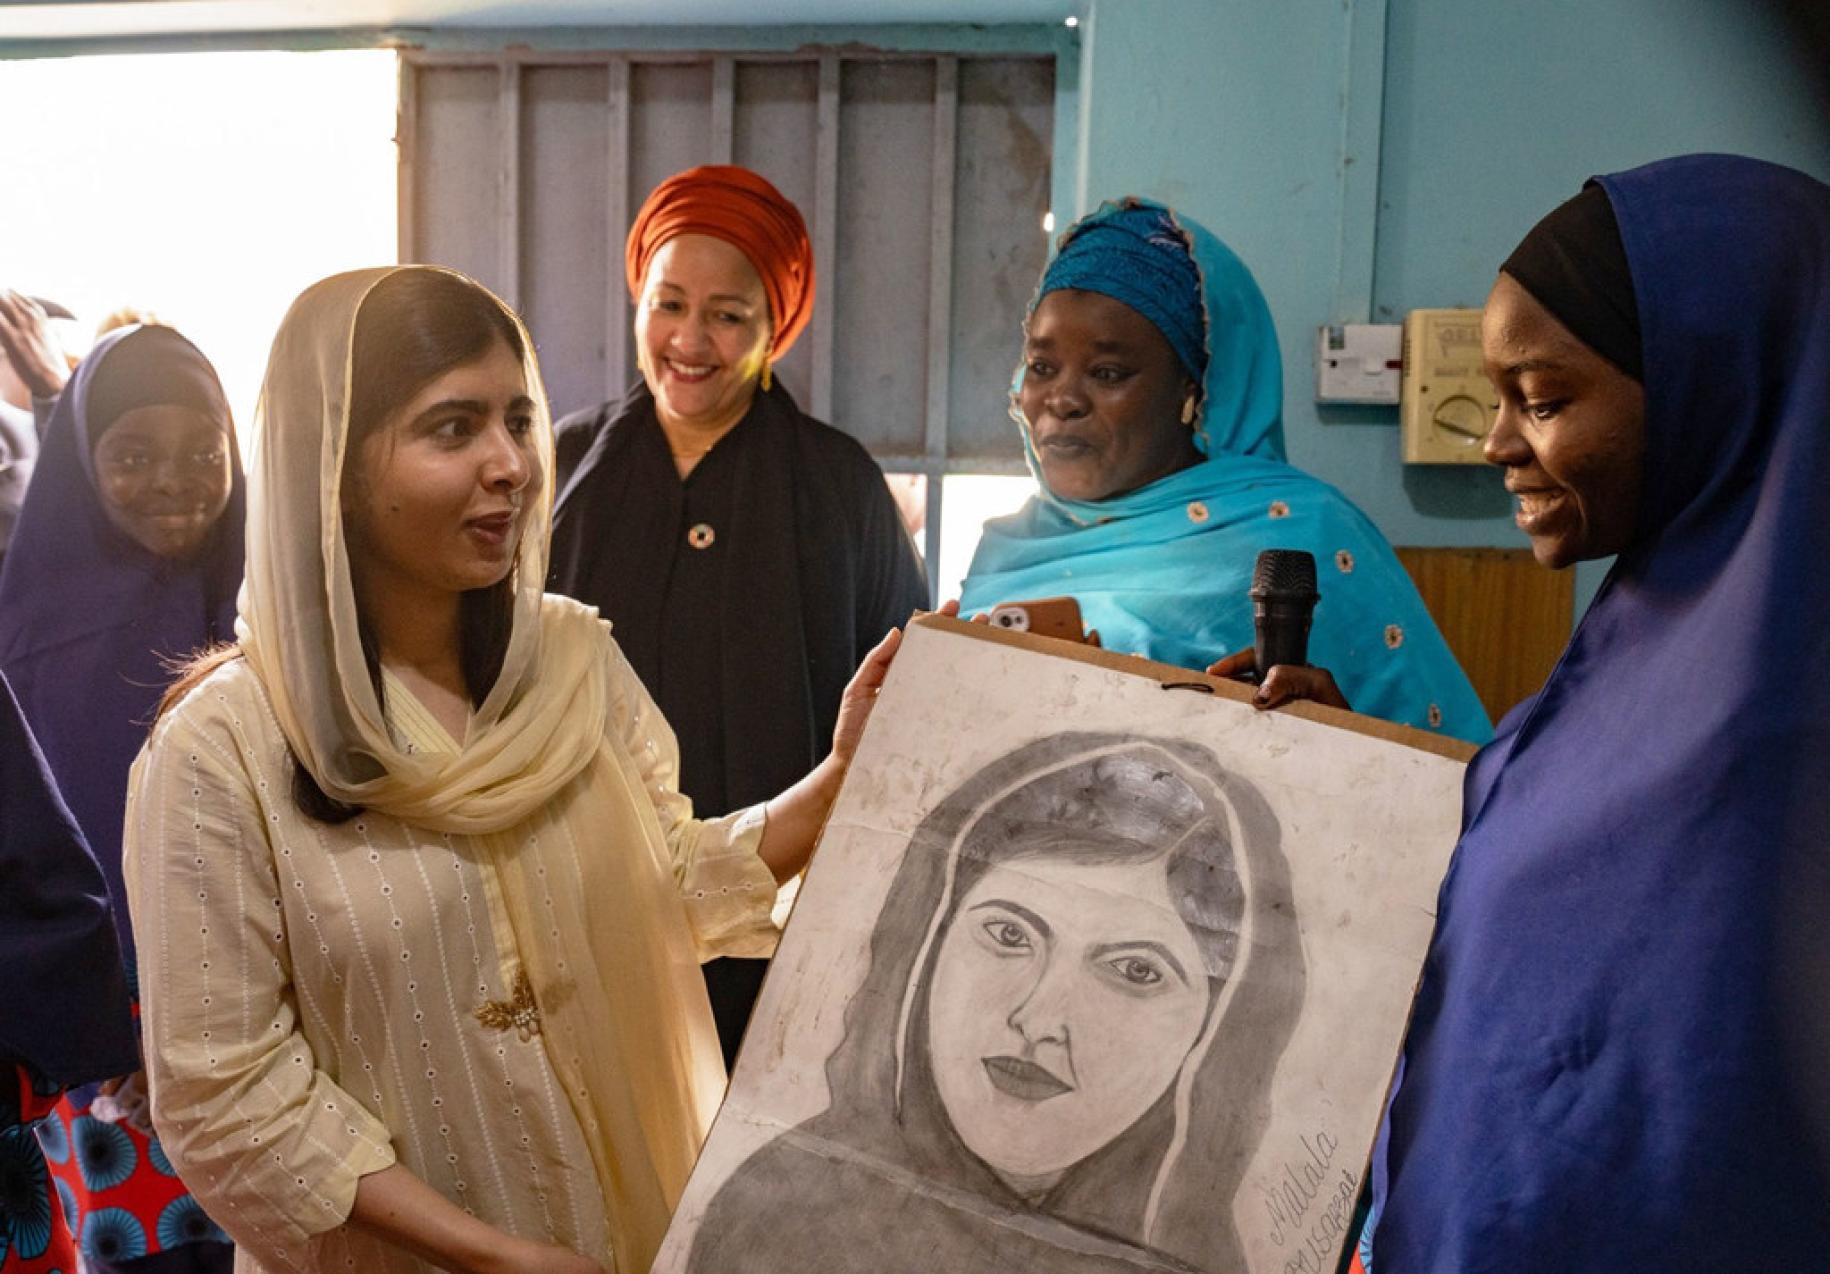 Malala Yousafzai receives a photo as Deputy Secretary-General Amina J. Mohammed looks on